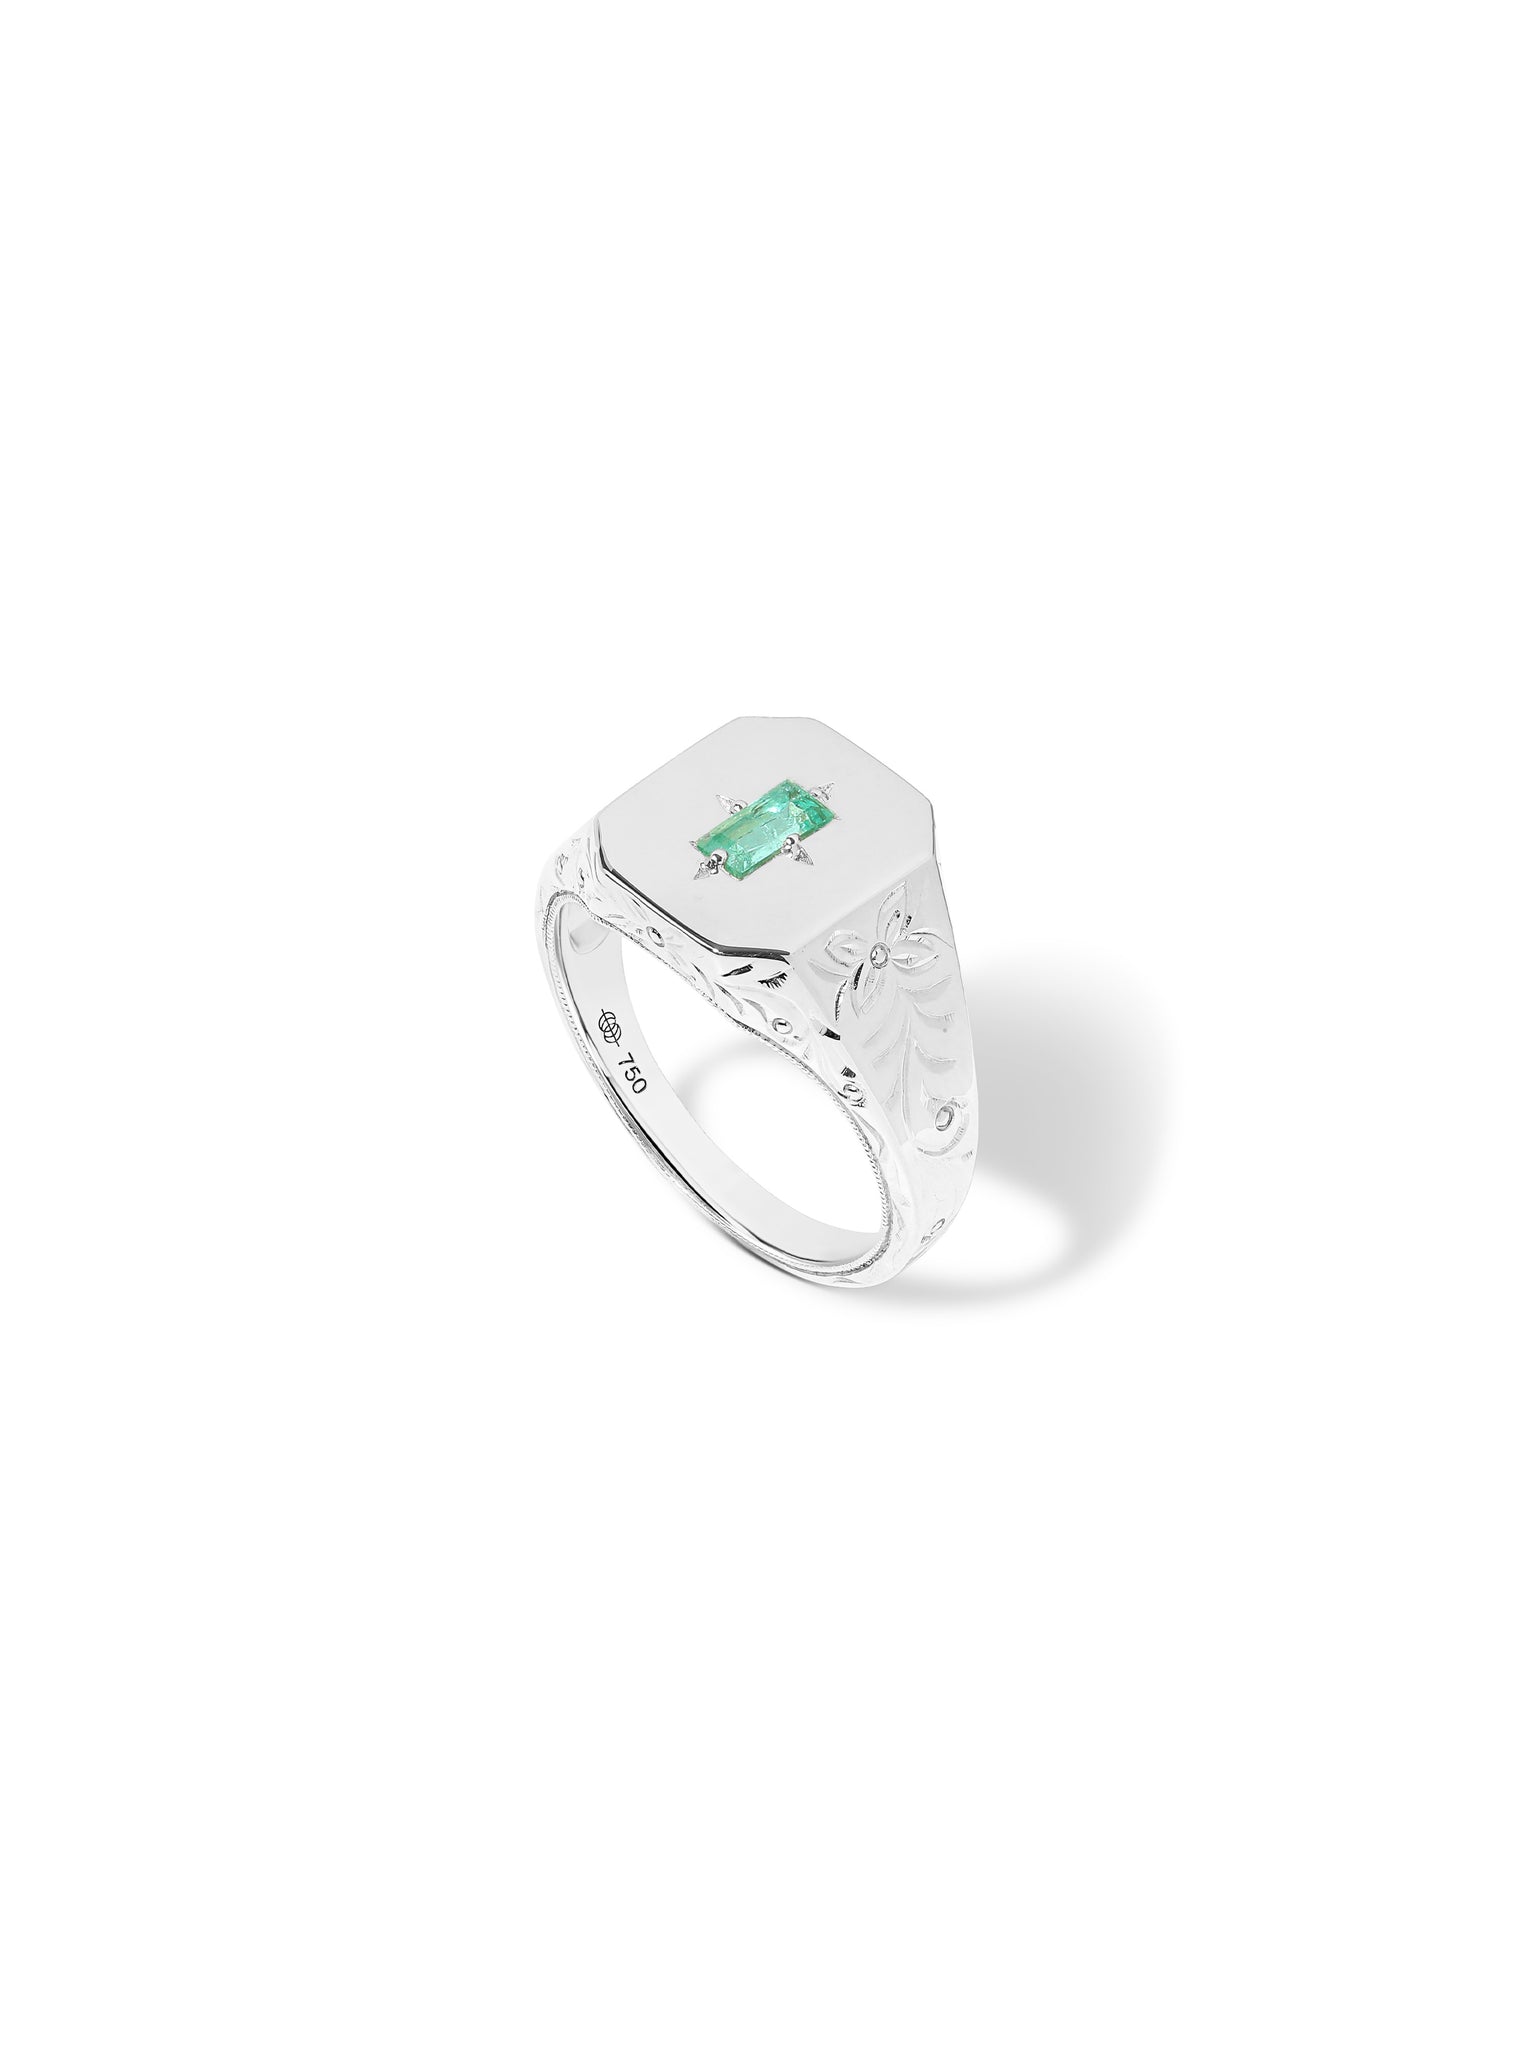 Spade Warisan Emerald Signet Ring